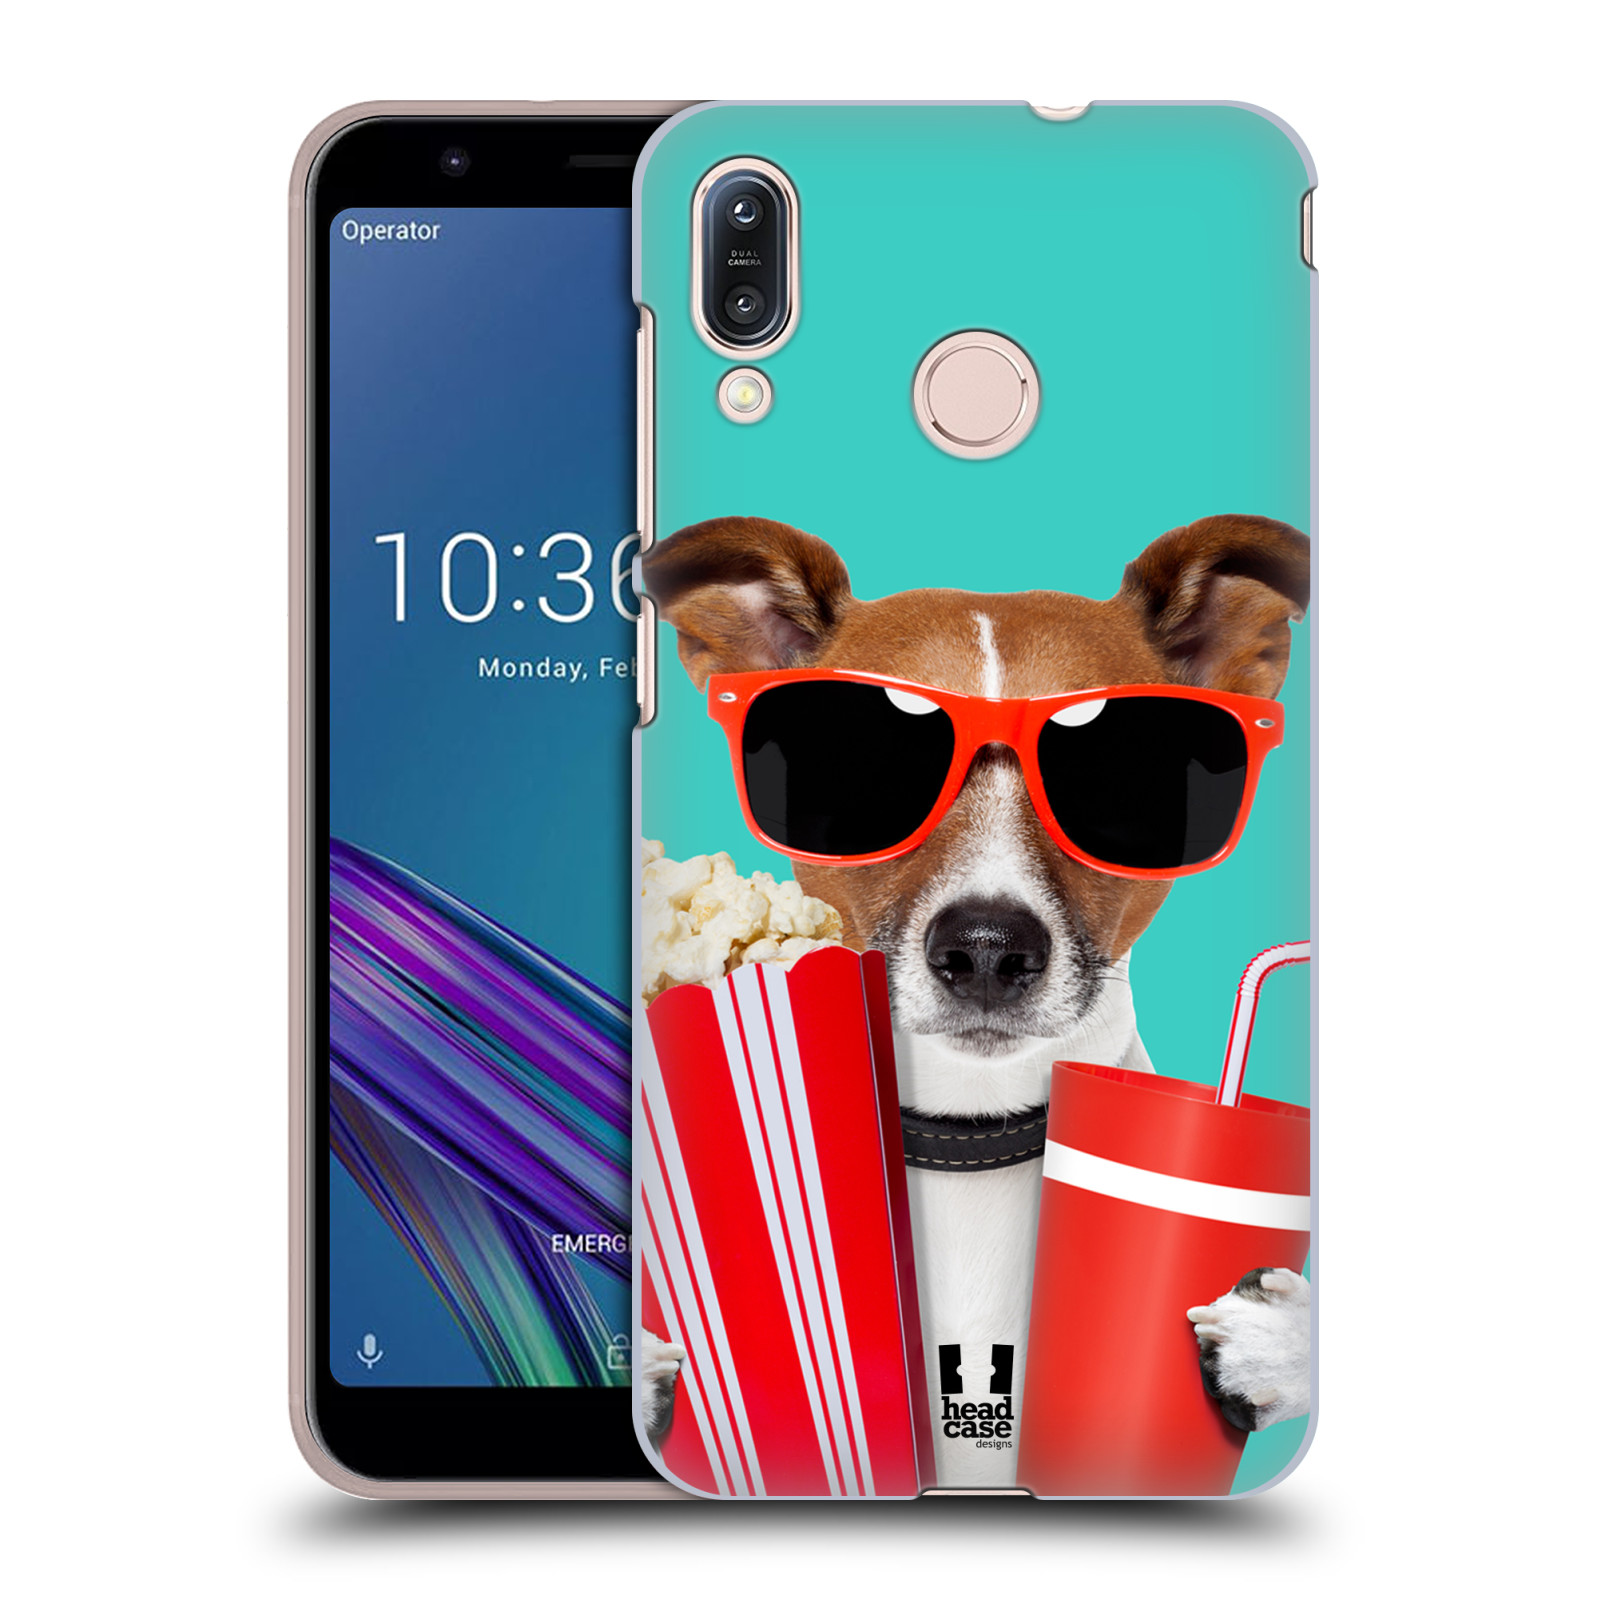 Pouzdro na mobil Asus Zenfone Max M1 (ZB555KL) - HEAD CASE - vzor Legrační zvířátka pejsek v kině s popkornem